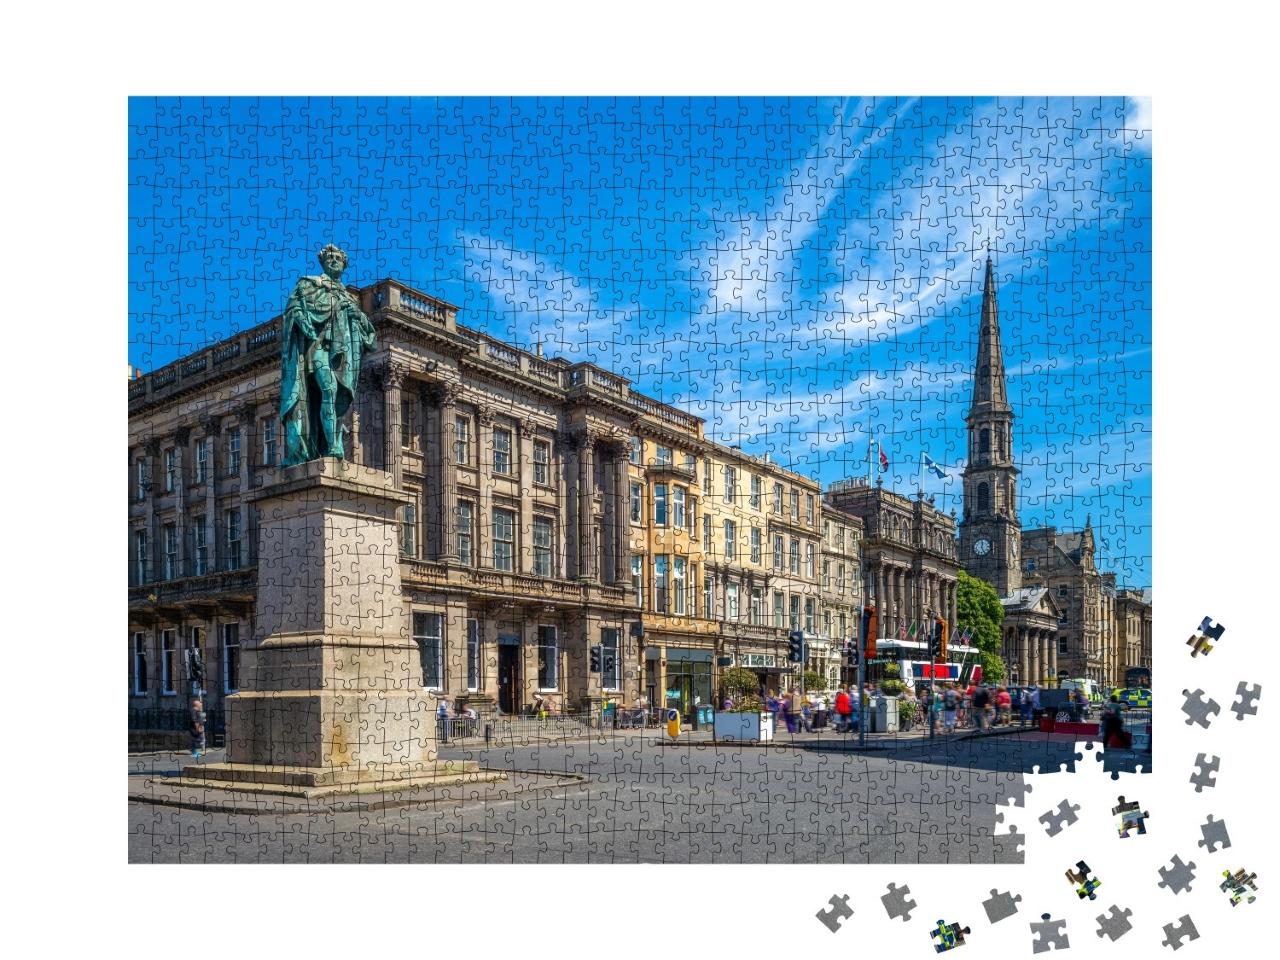 Puzzle de 1000 pièces « George Street à Édimbourg, Écosse »